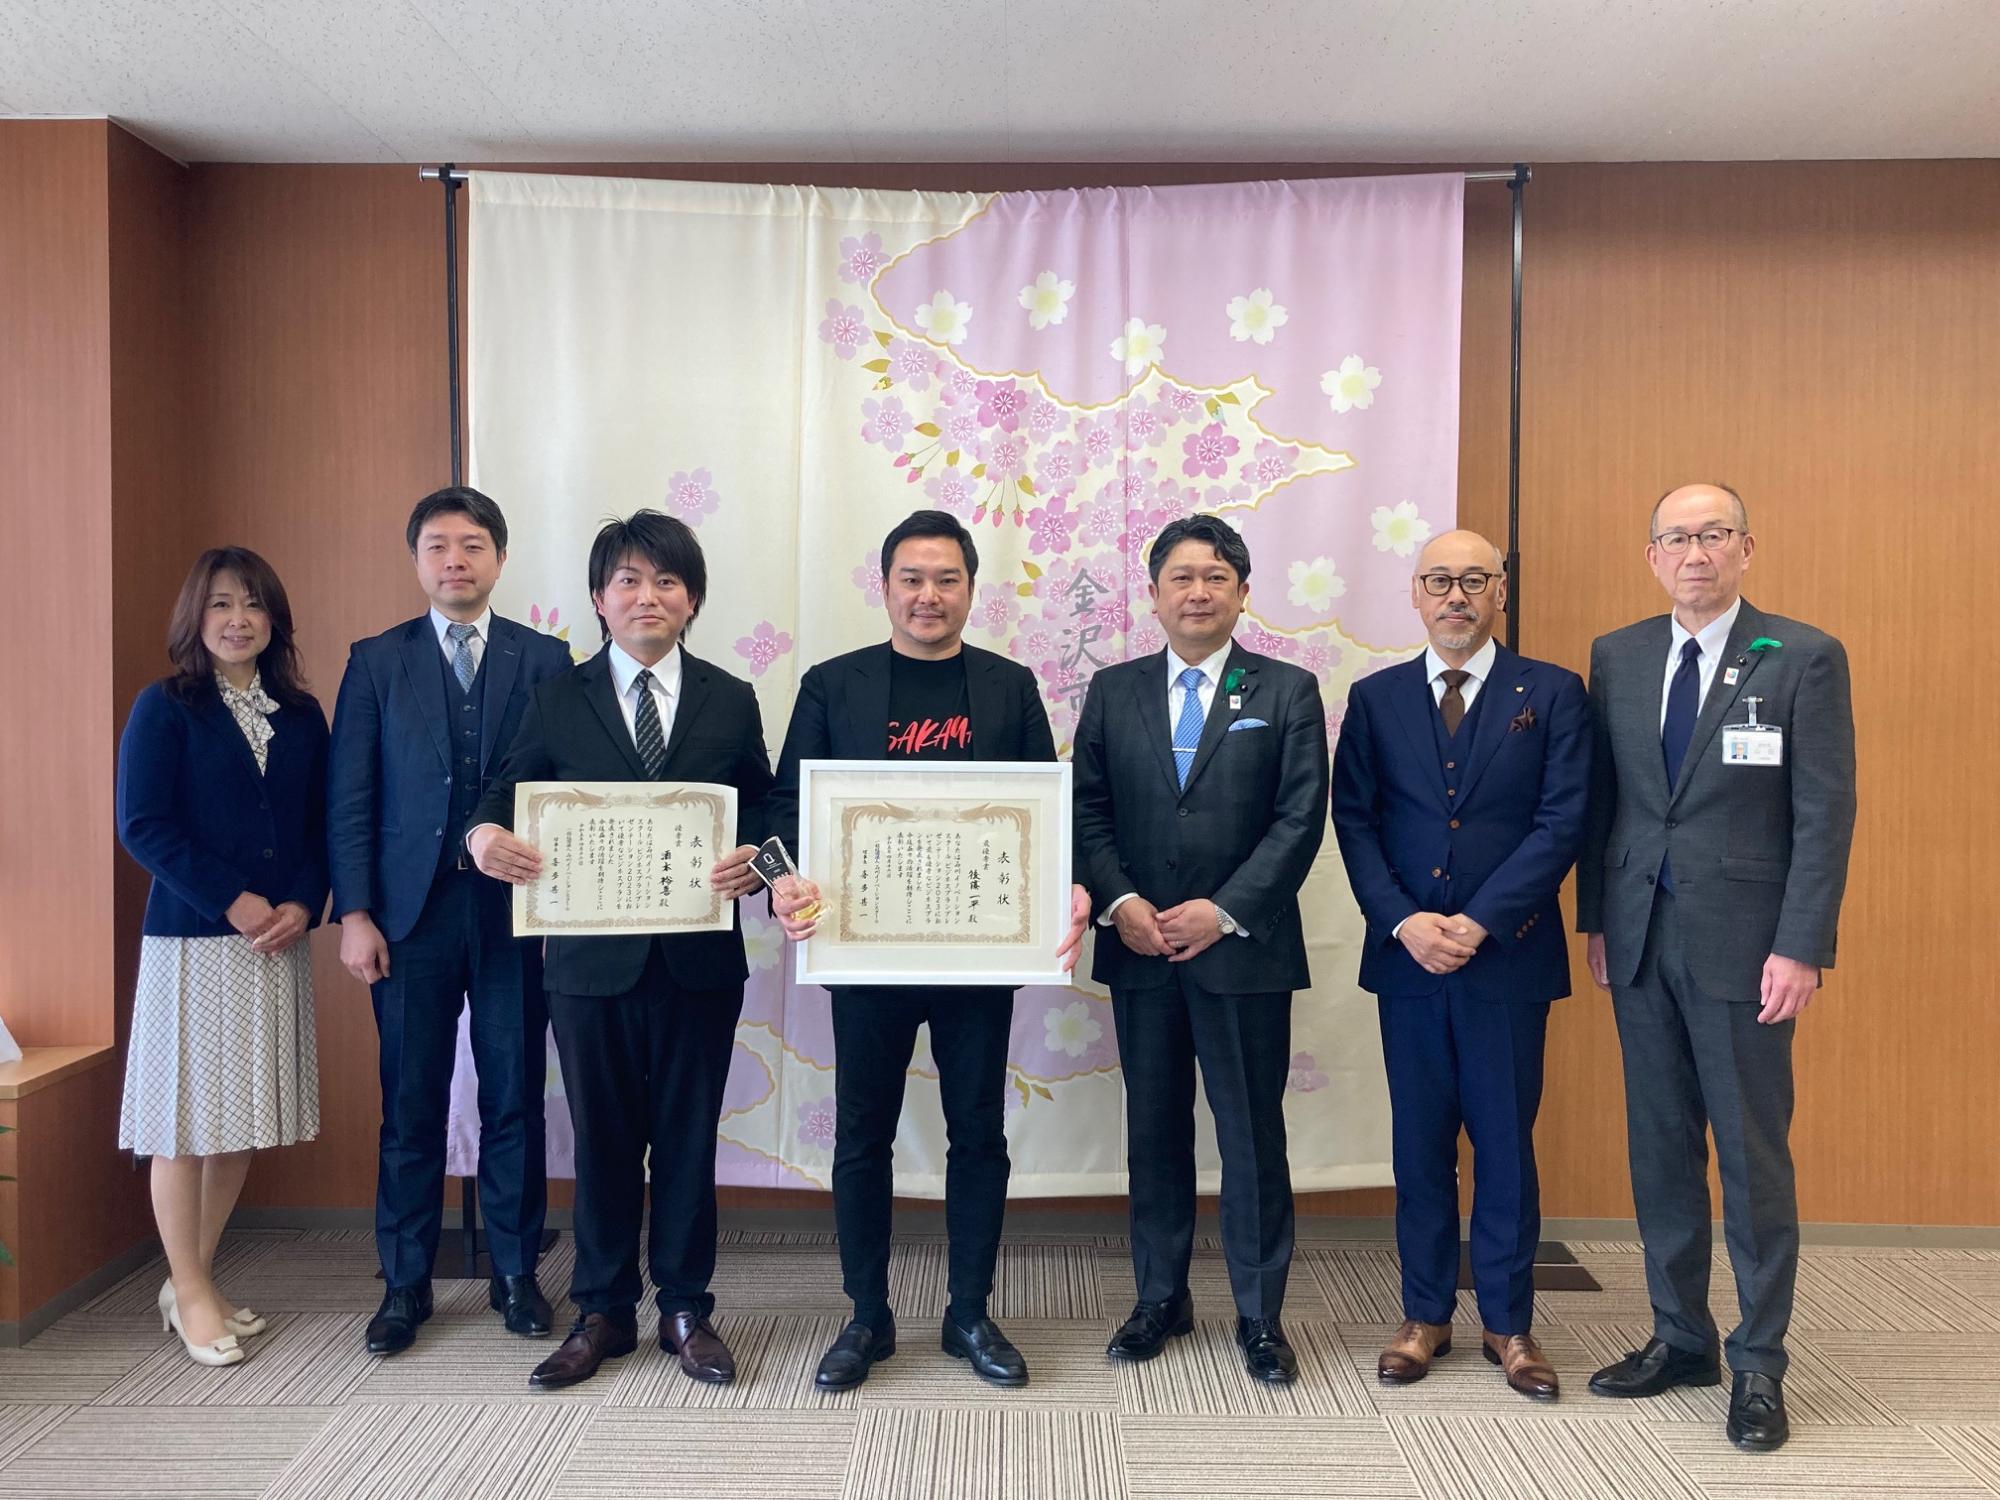 石川イノベーションスクールビジネスプランプレゼンテーション2023の入賞者のお二人と市長の様子